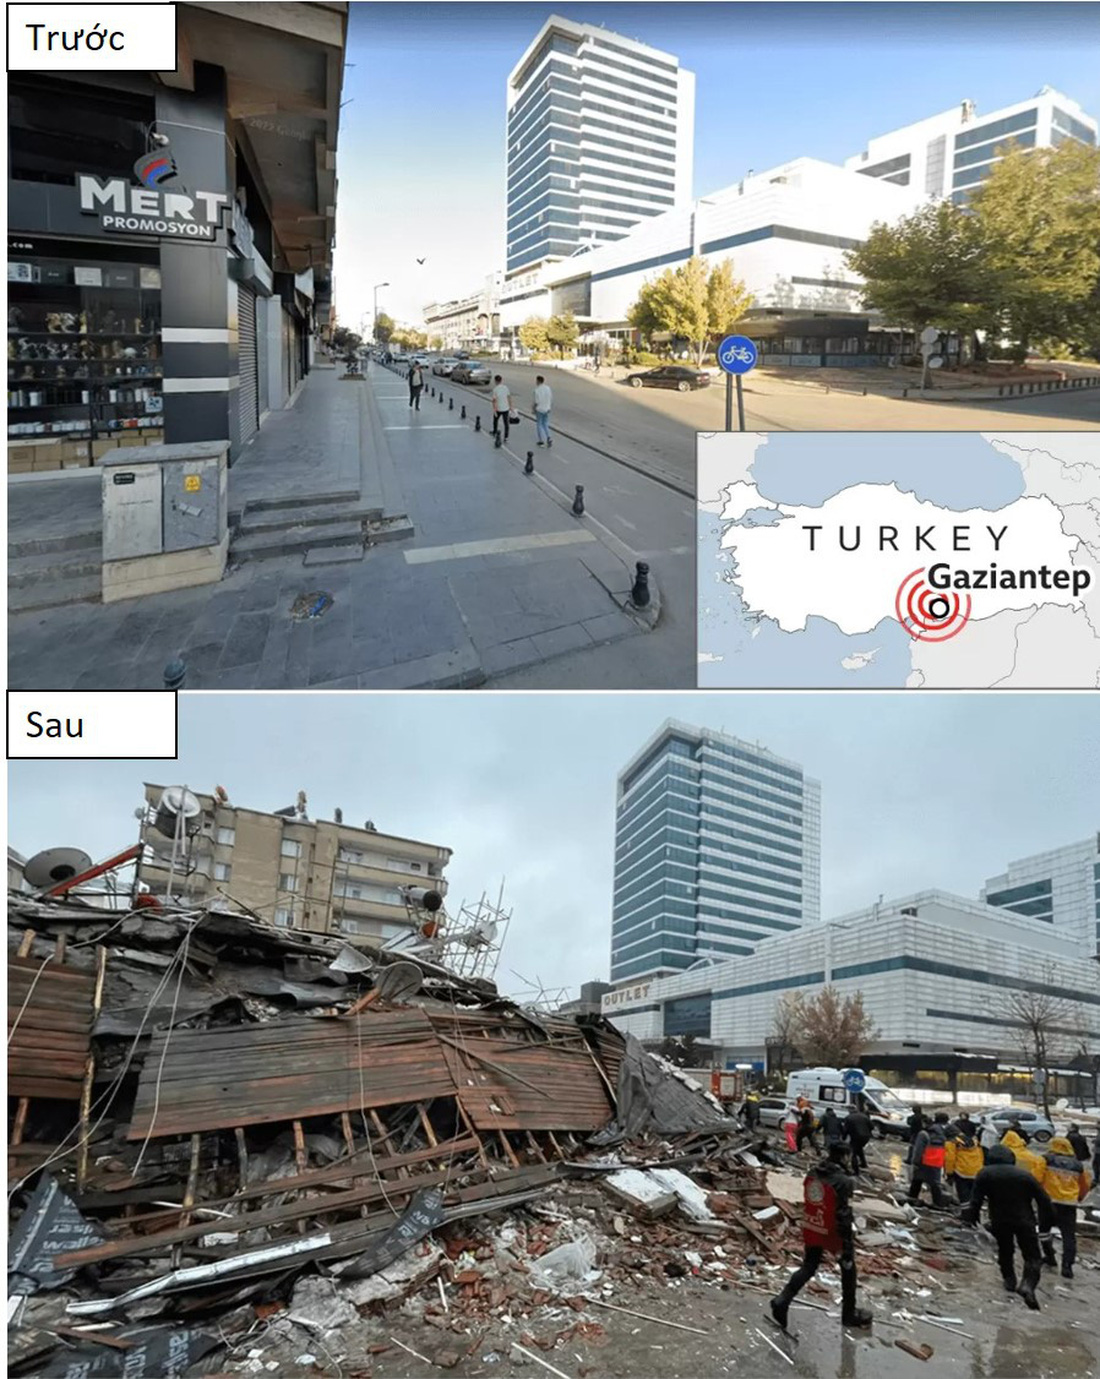 Hình ảnh Thổ Nhĩ Kỳ, Syria trước và sau động đất kép - Ảnh 1.